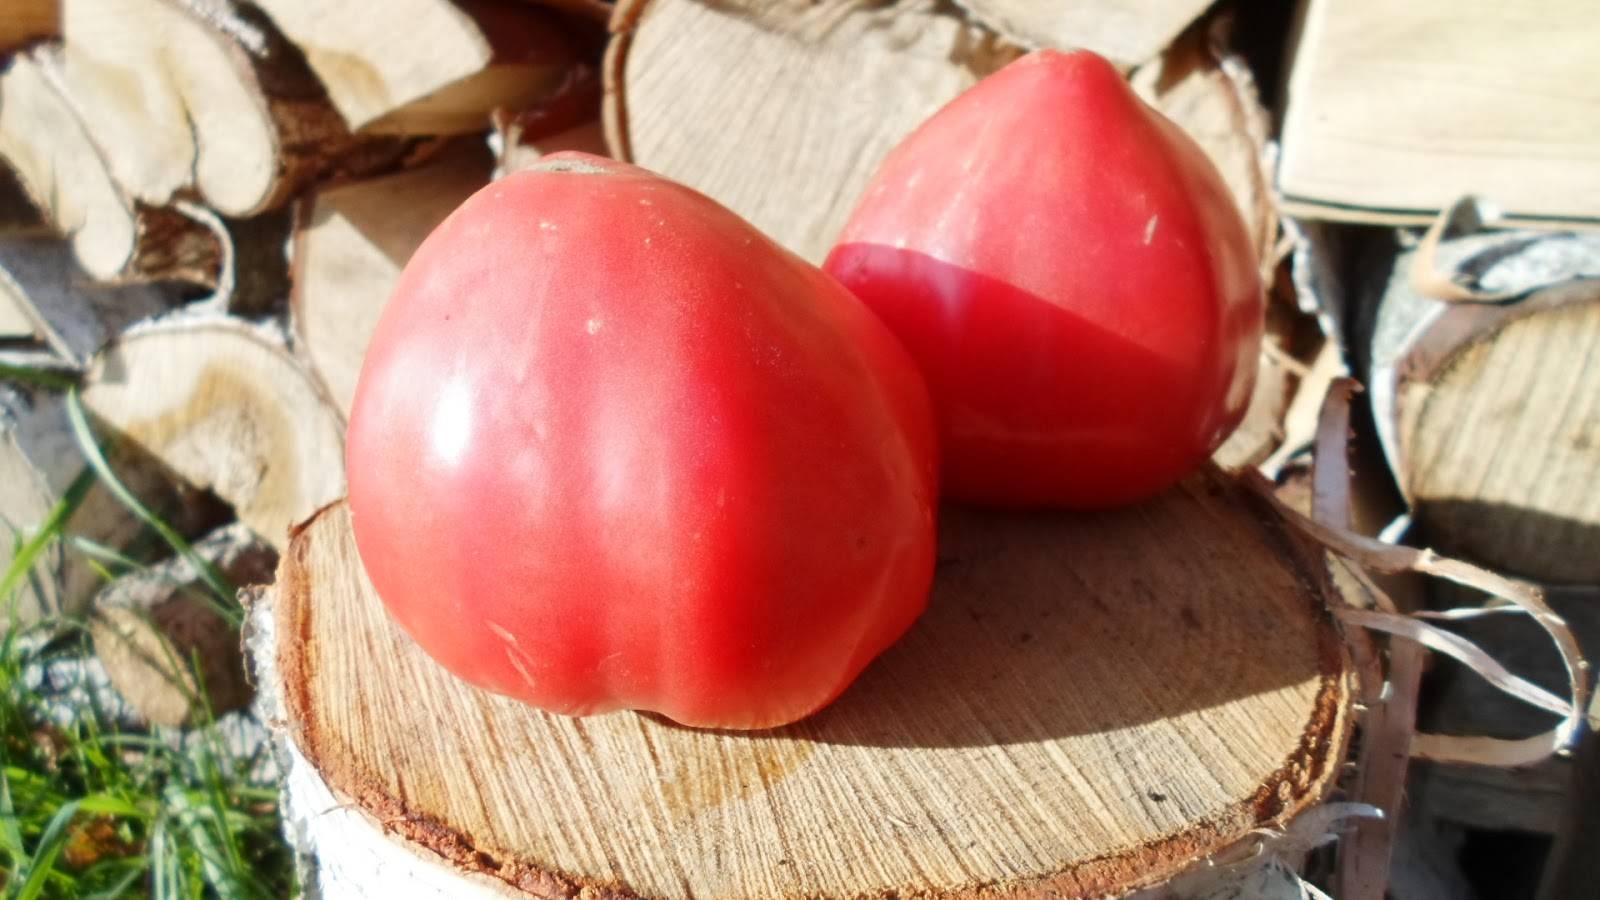 Томат любимый праздник: характеристика и описание сорта с фото, урожайность помидора, отзывы тех, кто сажал | сортовед